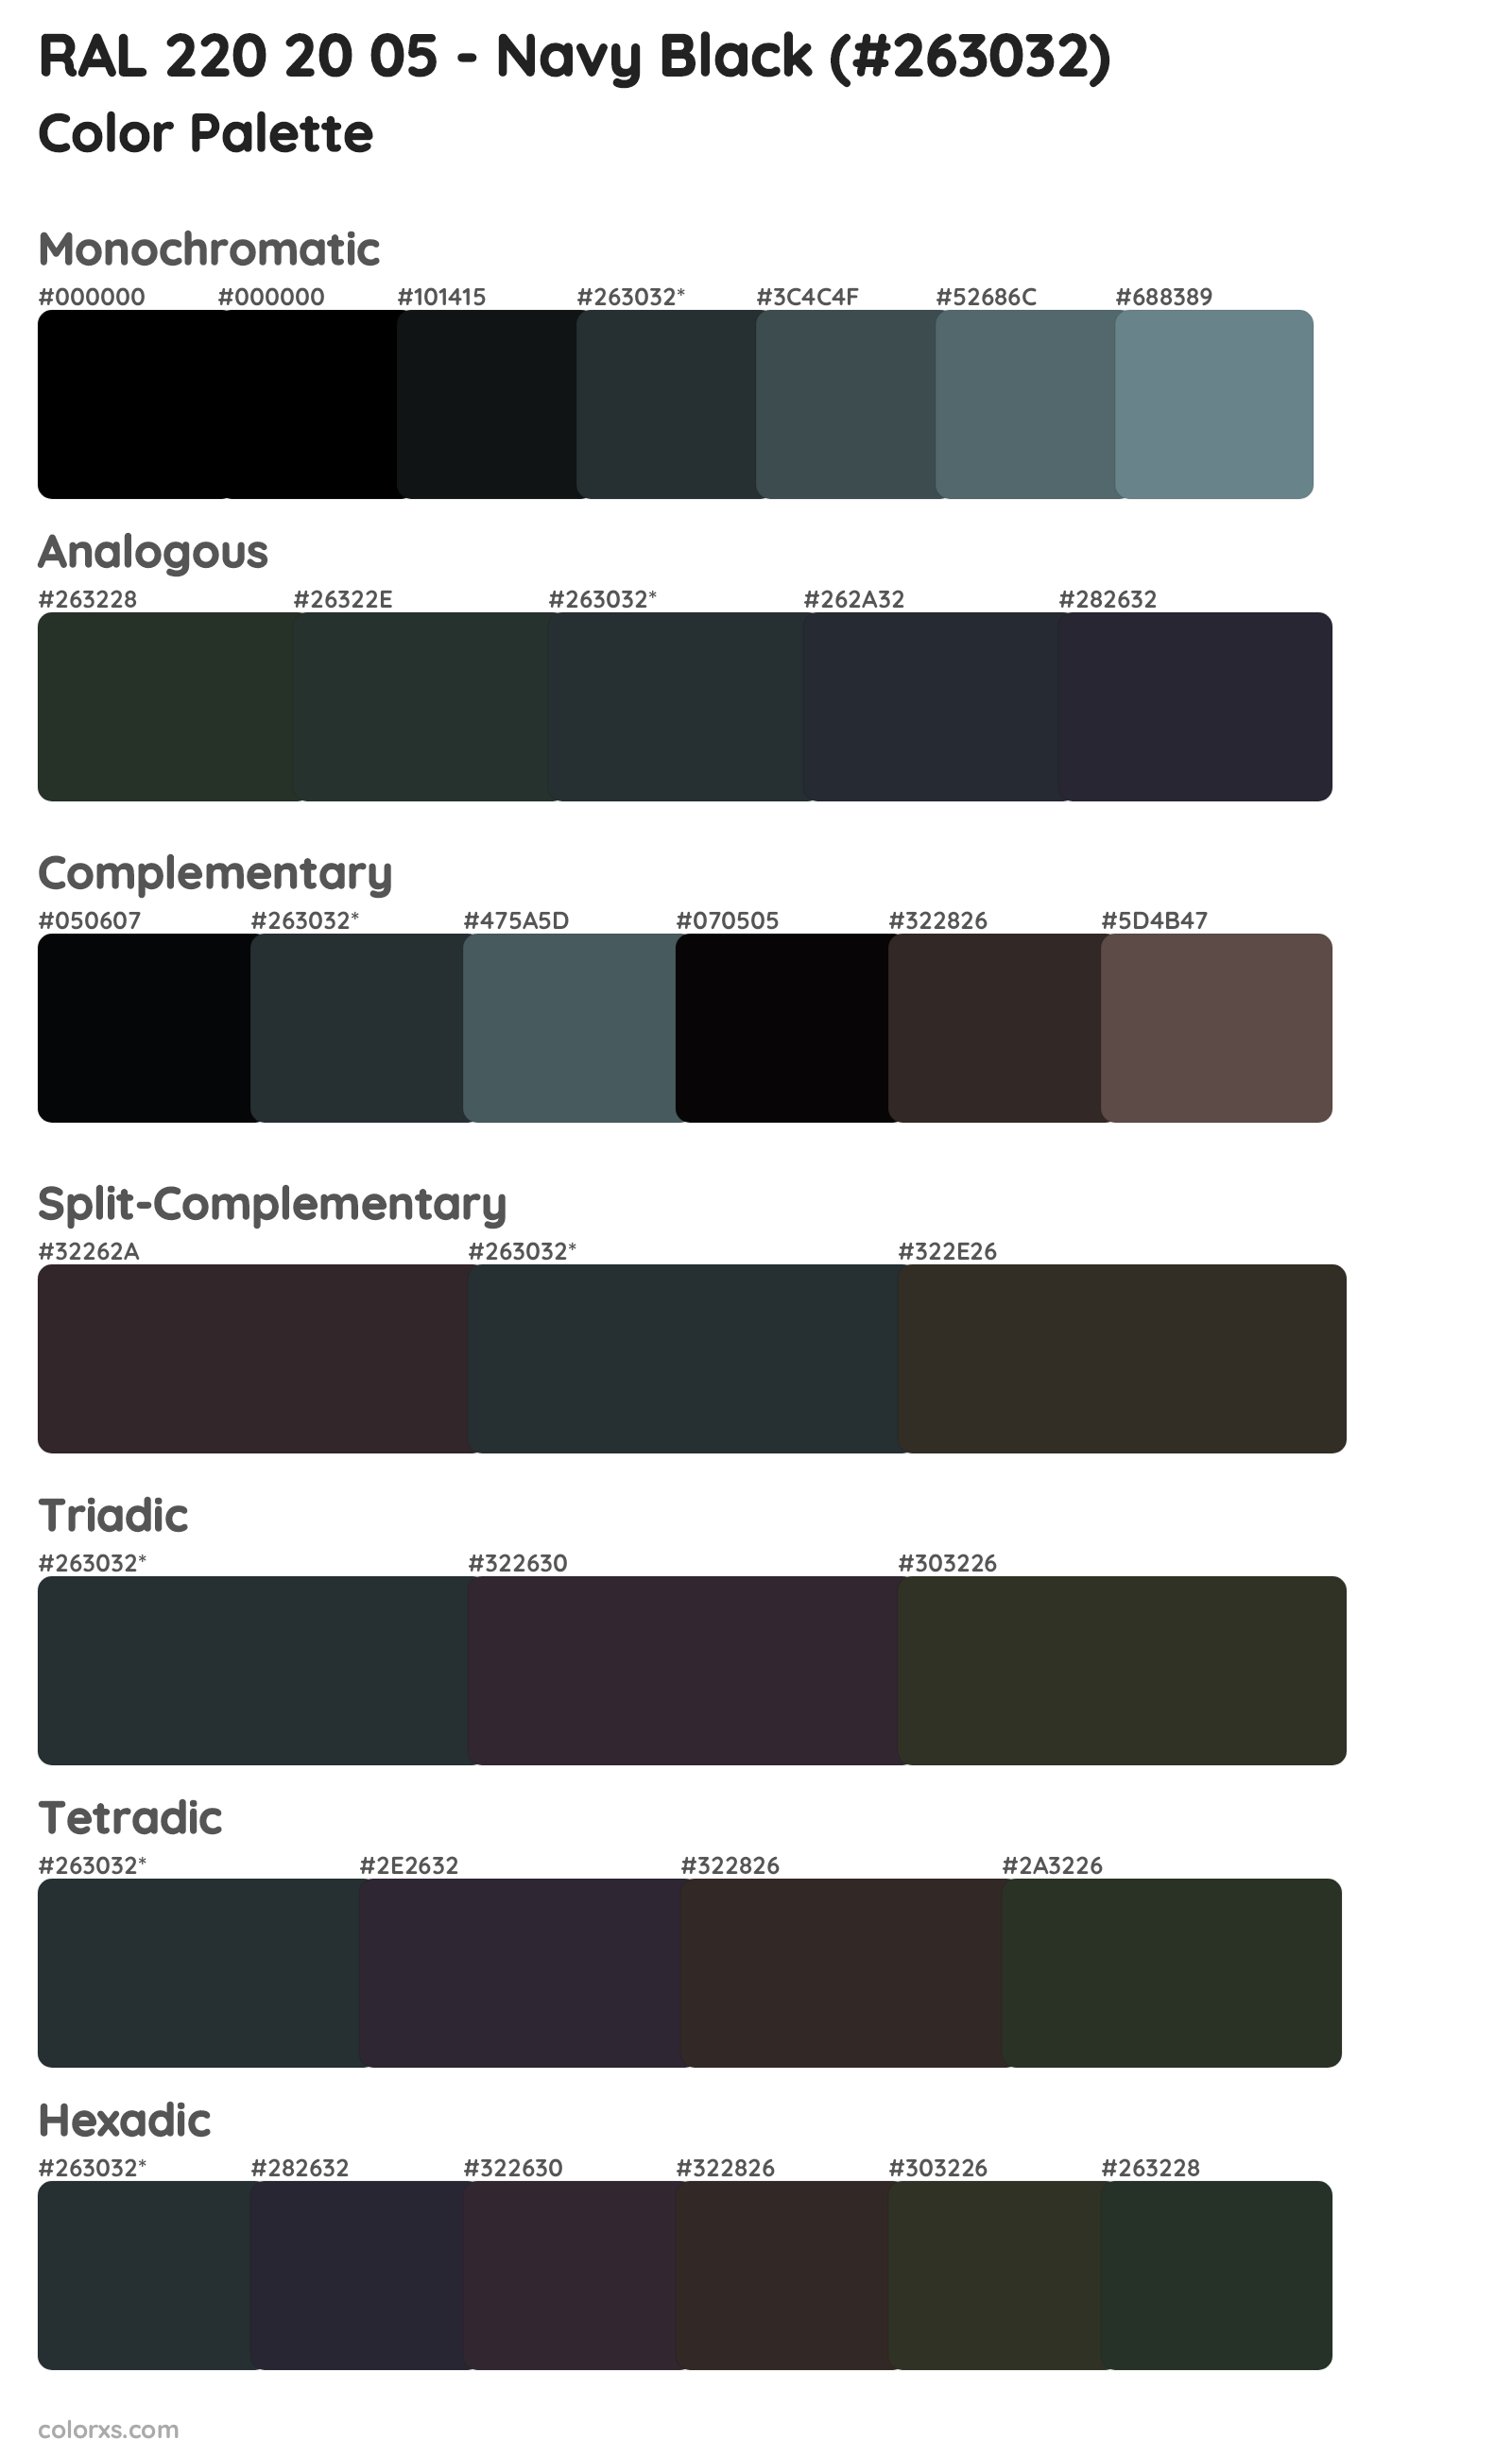 RAL 220 20 05 - Navy Black Color Scheme Palettes